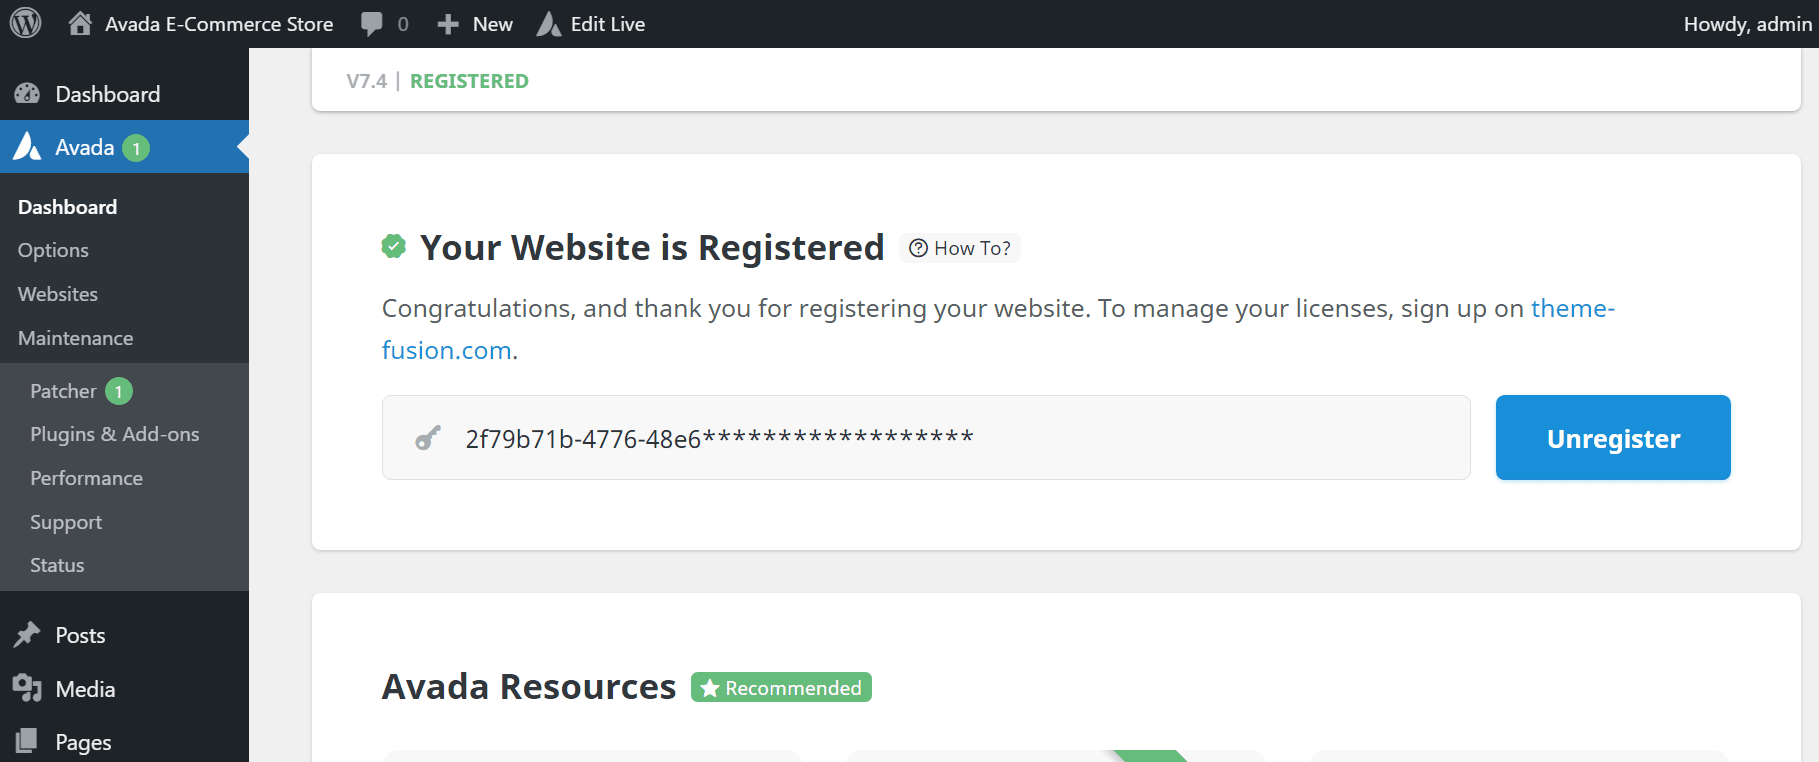 Website is Registered